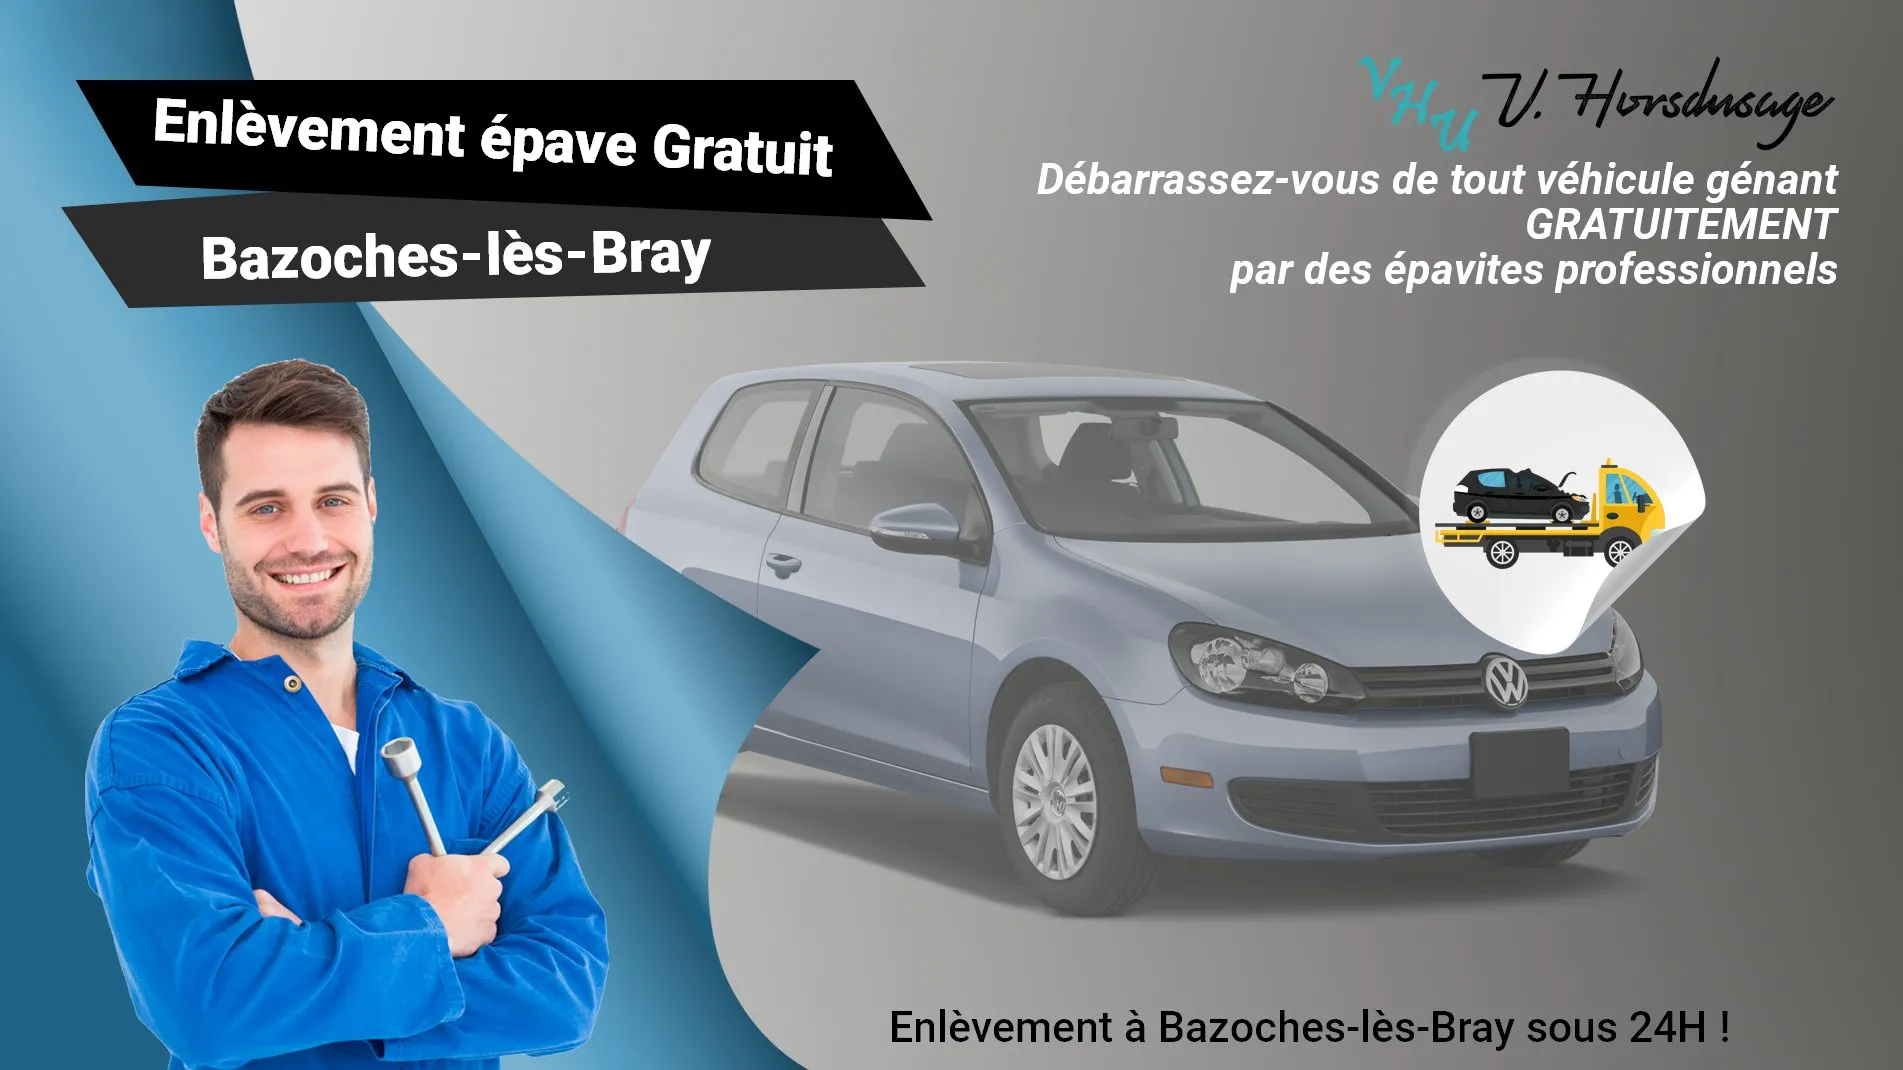 Pour un enlèvement gratuit à Bazoches-lès-Bray, contactez nos épavistes agréé VHU